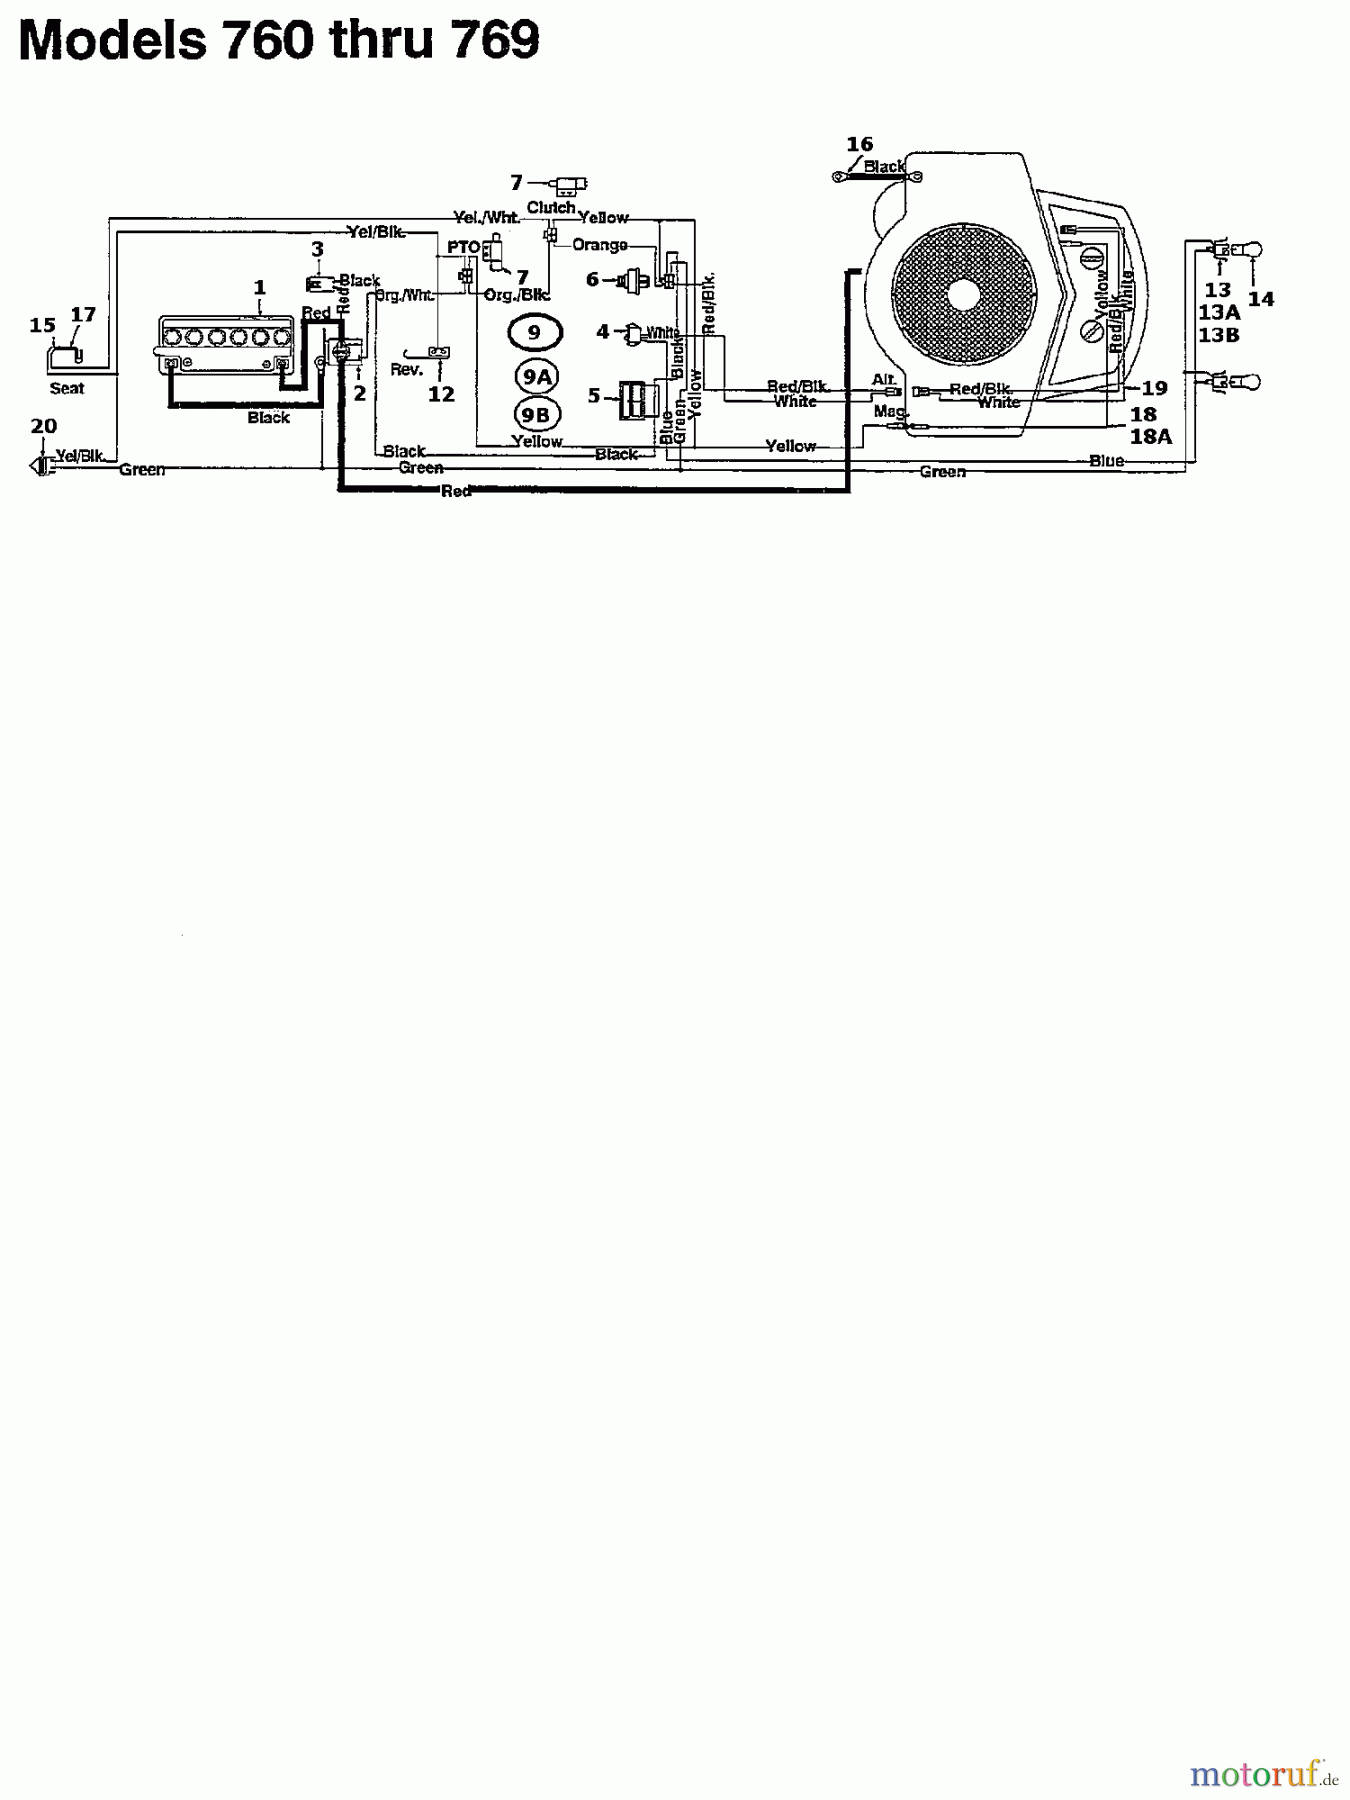  Motec Lawn tractors GT 160 RD 135T764N632  (1995) Wiring diagram